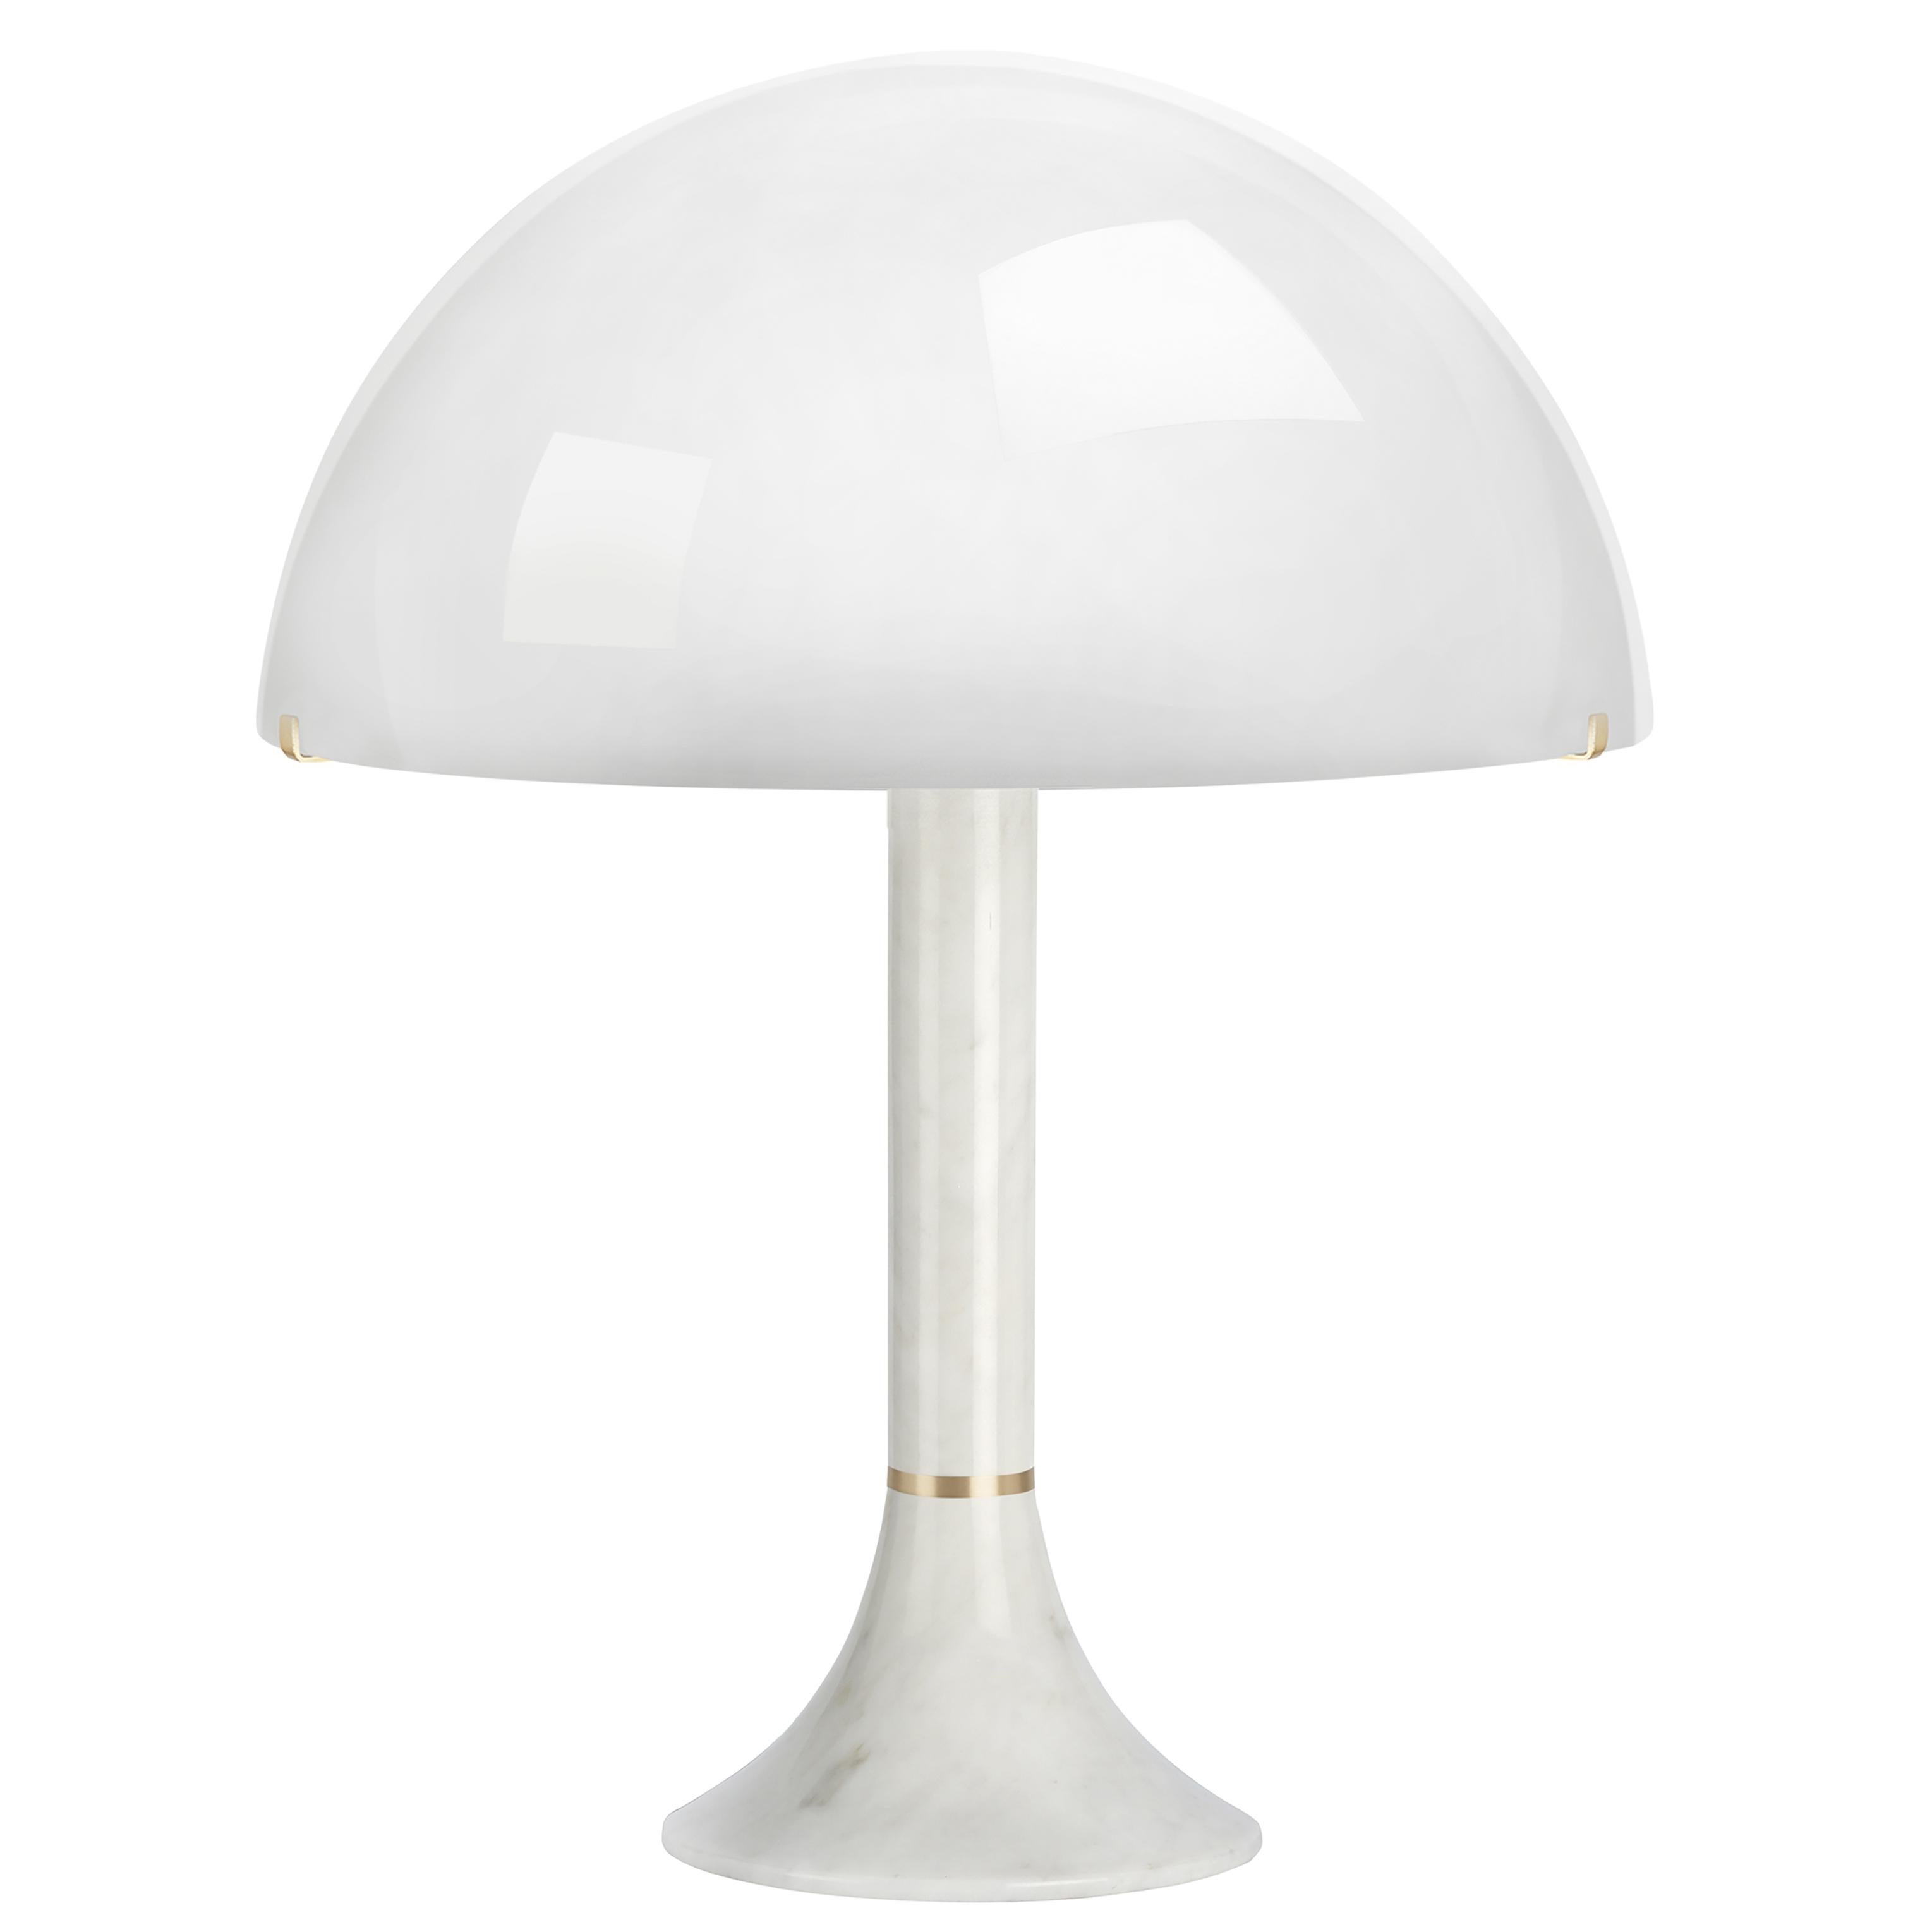 Lampe de table Bloomsbury par CTO Lighting
Matériaux : Marbre de Carrare blanc poli avec abat-jour en laiton satiné et verre opale.
Dimensions : L 38,5 x D 38,5 x H 49 cm

2 x E12, 60w max (ou 6,5w LED 2700k)
poids 6kg (13.2lbs)
2000mm (78.8